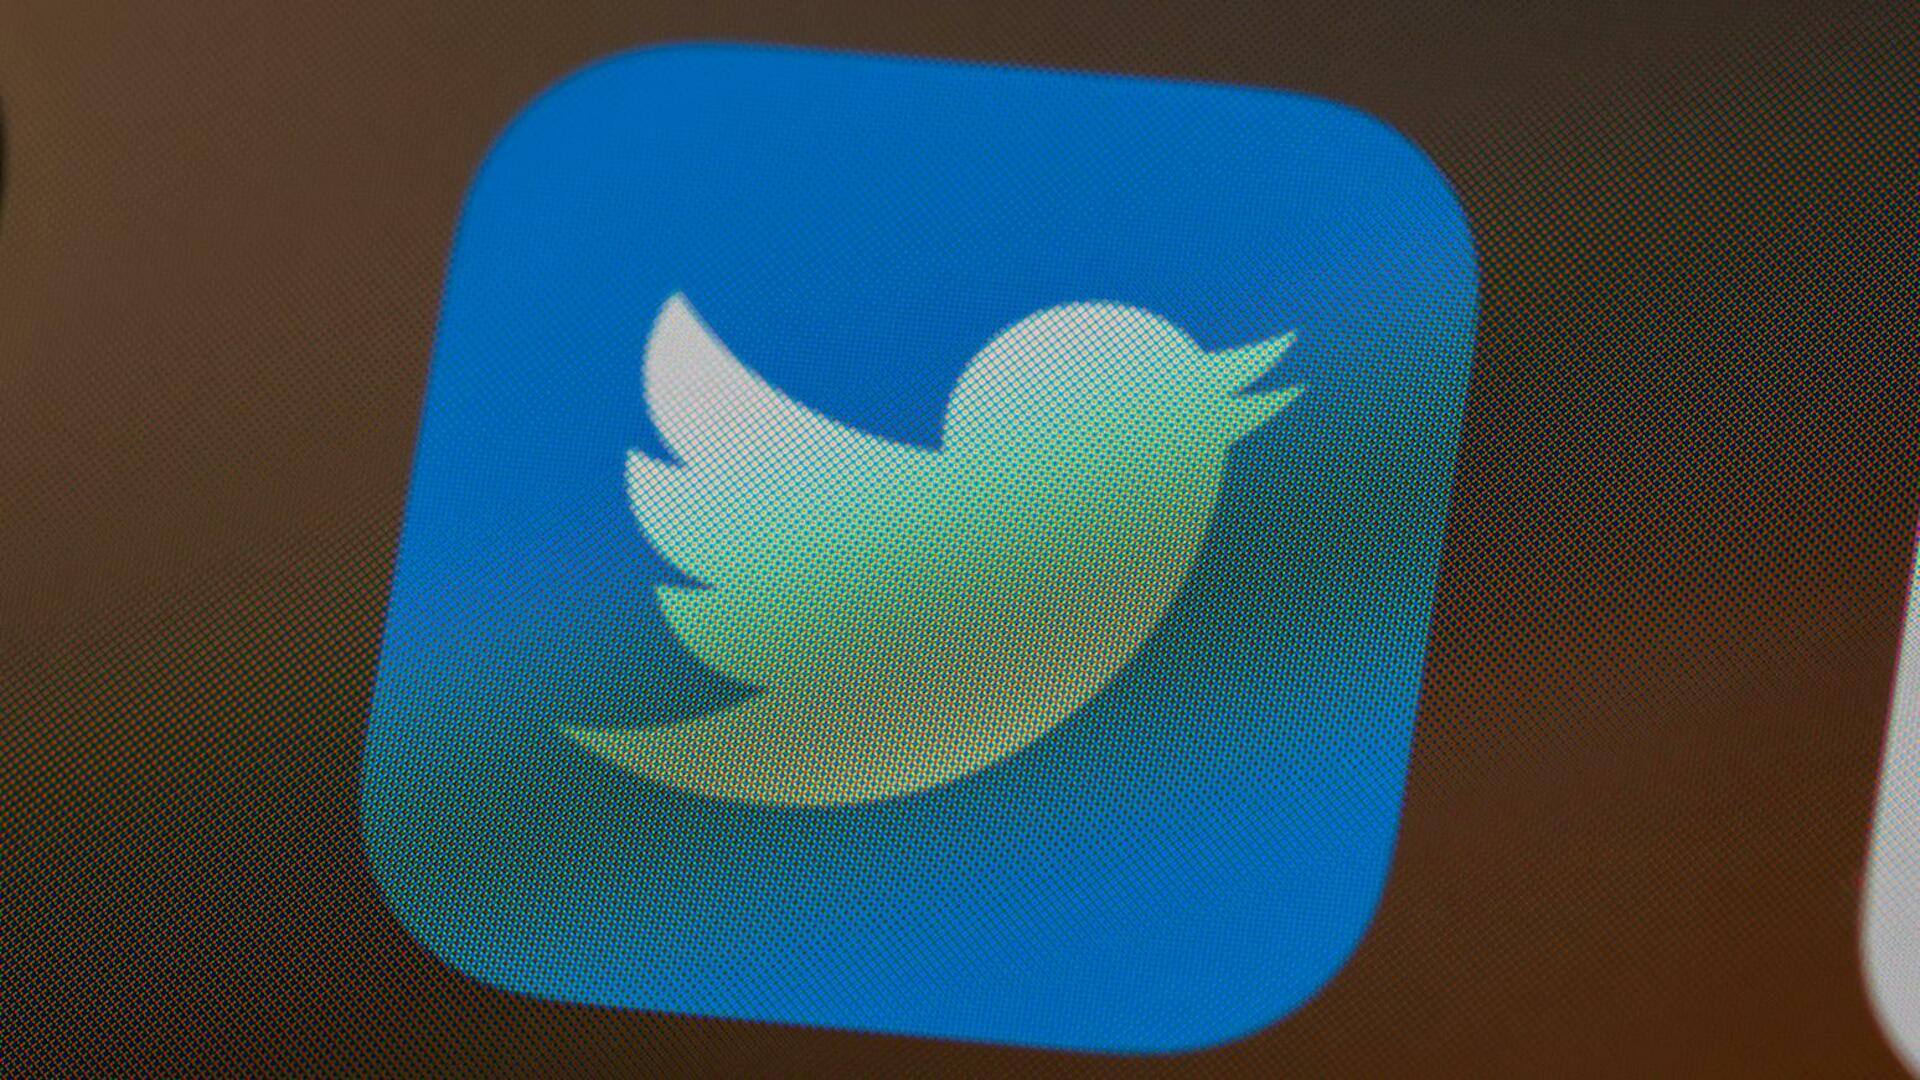 ट्विटर टेक्स्ट फॉर्मेटिंग फीचर पर कर रही काम, यूजर्स को होगा यह फायदा 